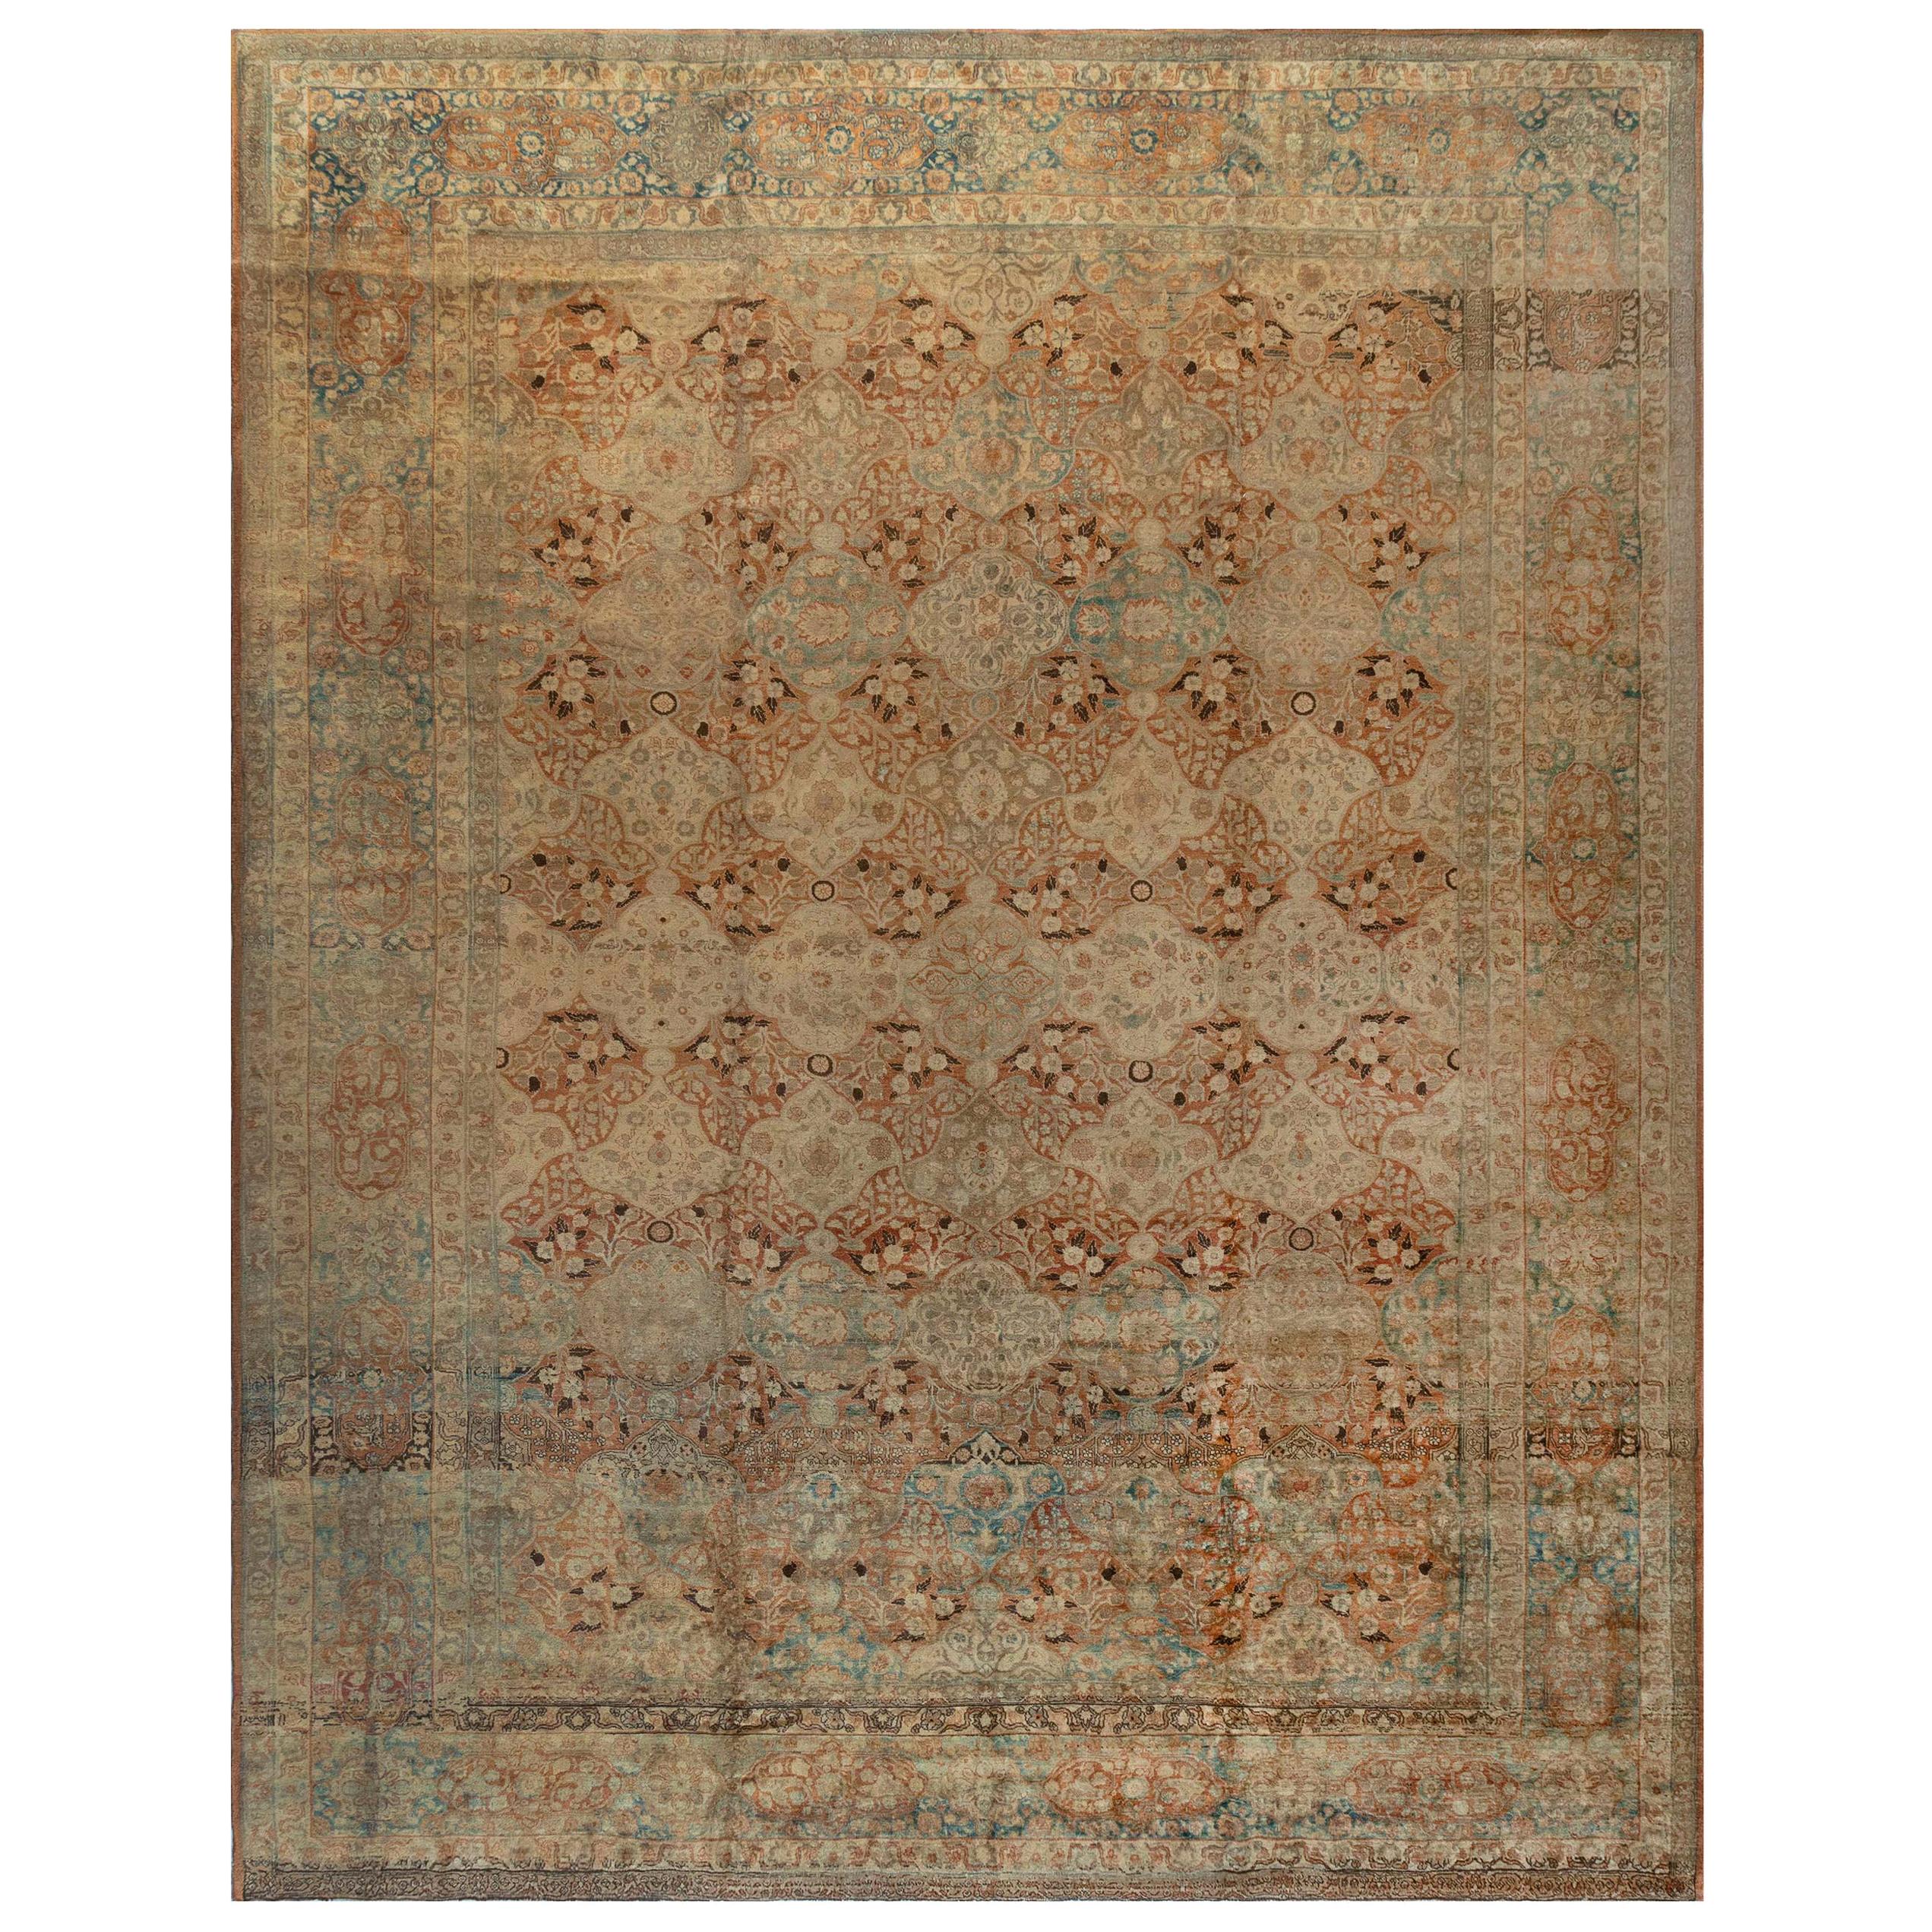 Authentic 19th Century Persian Tabriz Carpet